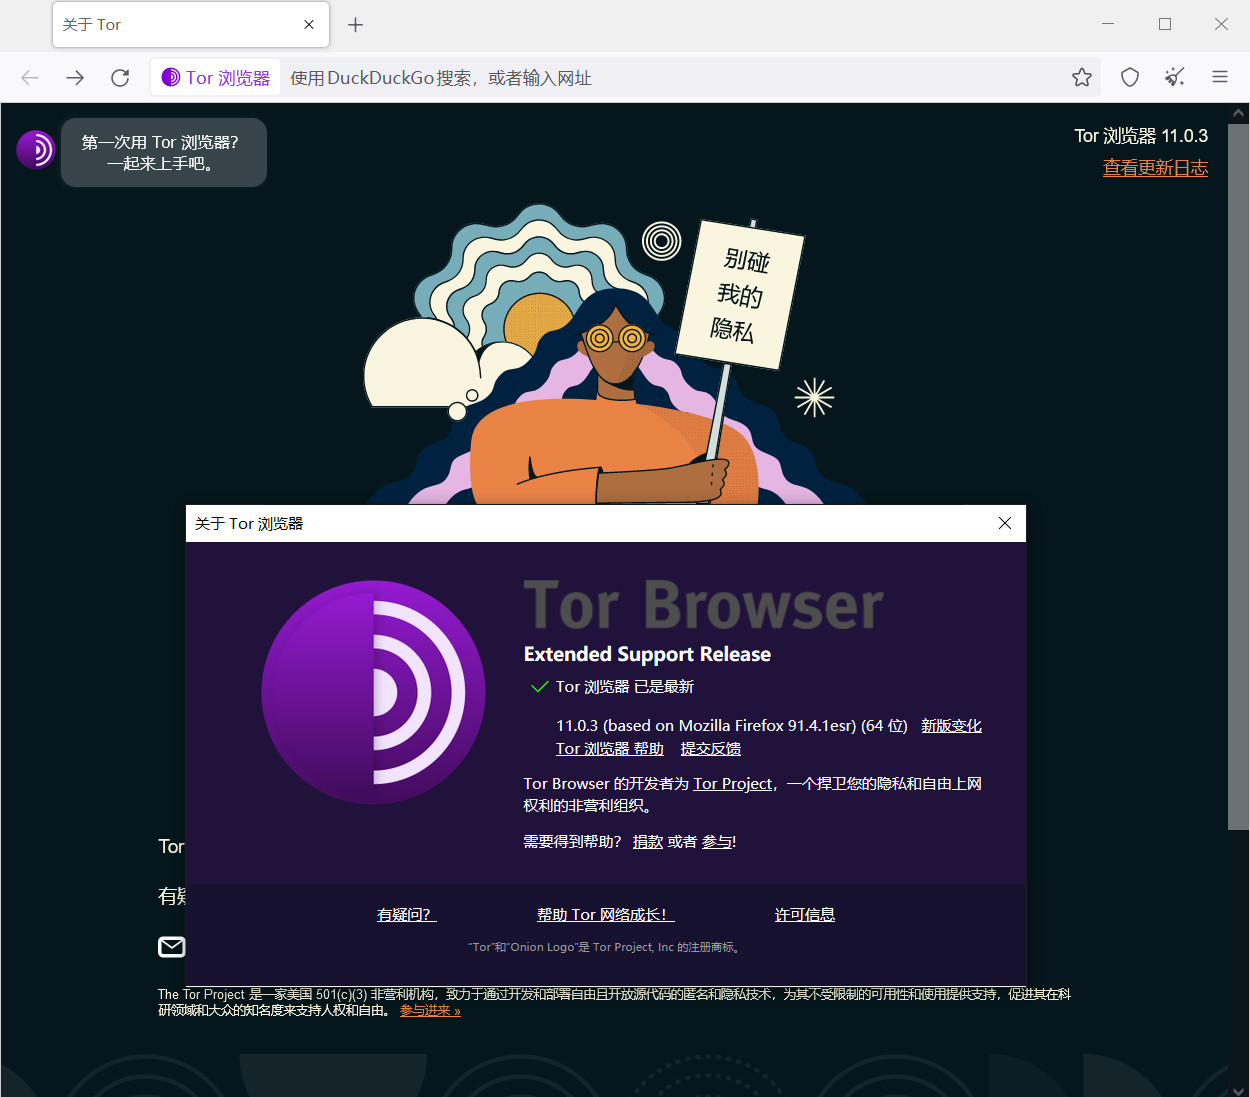 (洋葱头浏览器)Tor Browser 11.0.3 正式版发布(Win/Mac/Linux/Android全平台版本),附送官方下载地址